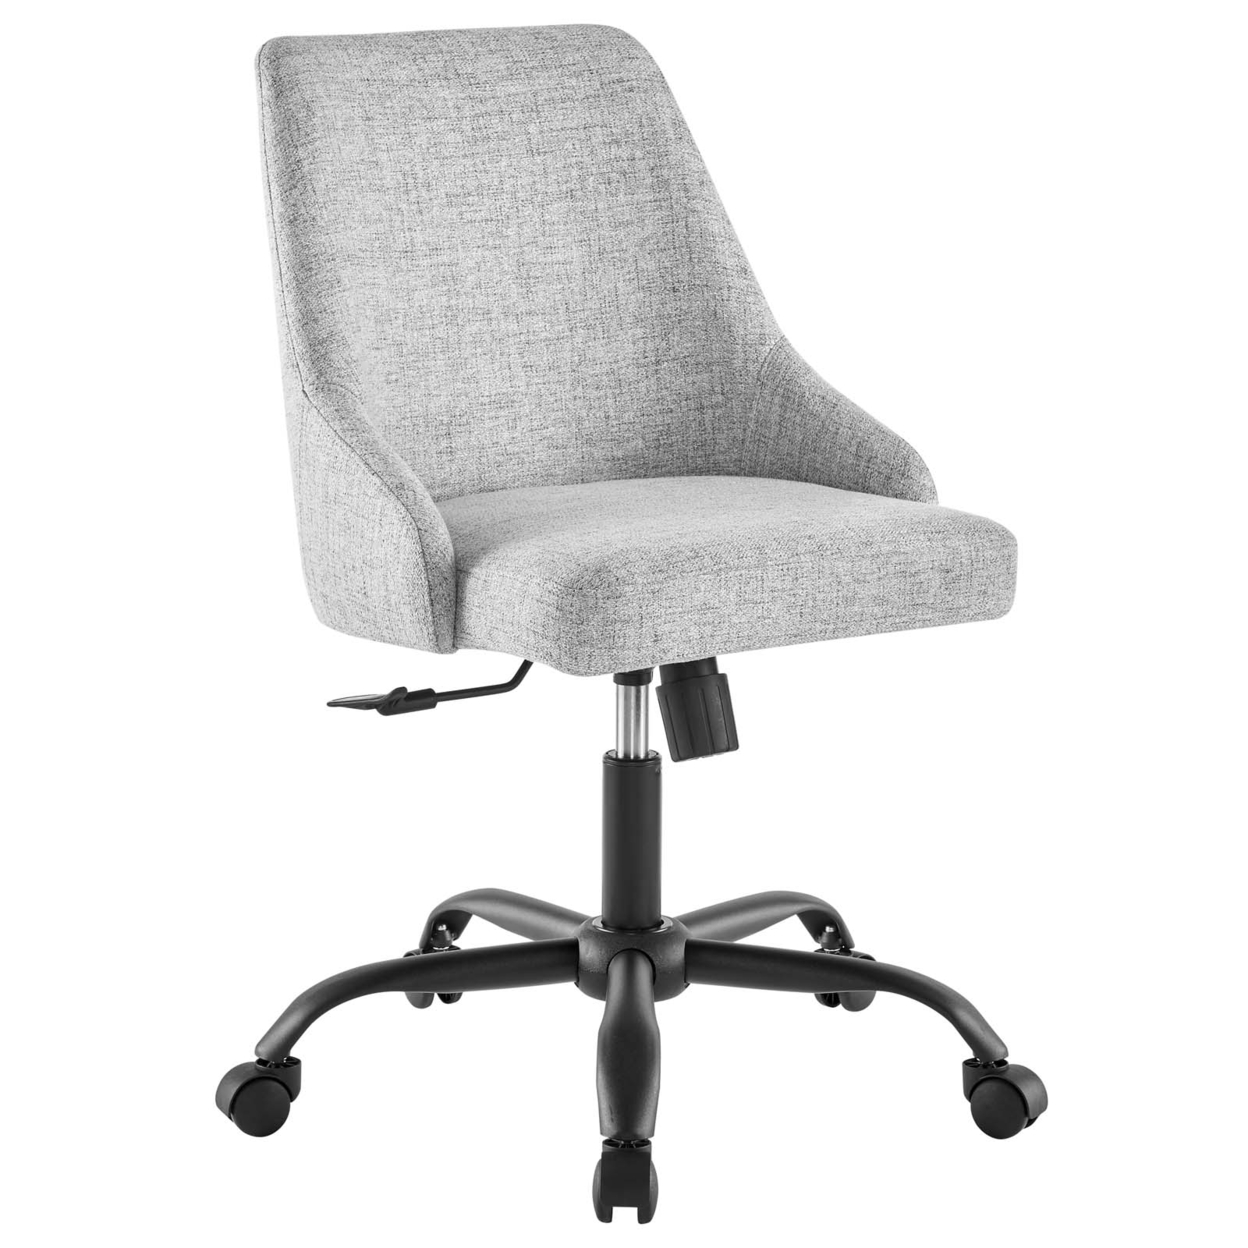 Designate Swivel Upholstered Office Chair, Black Gray